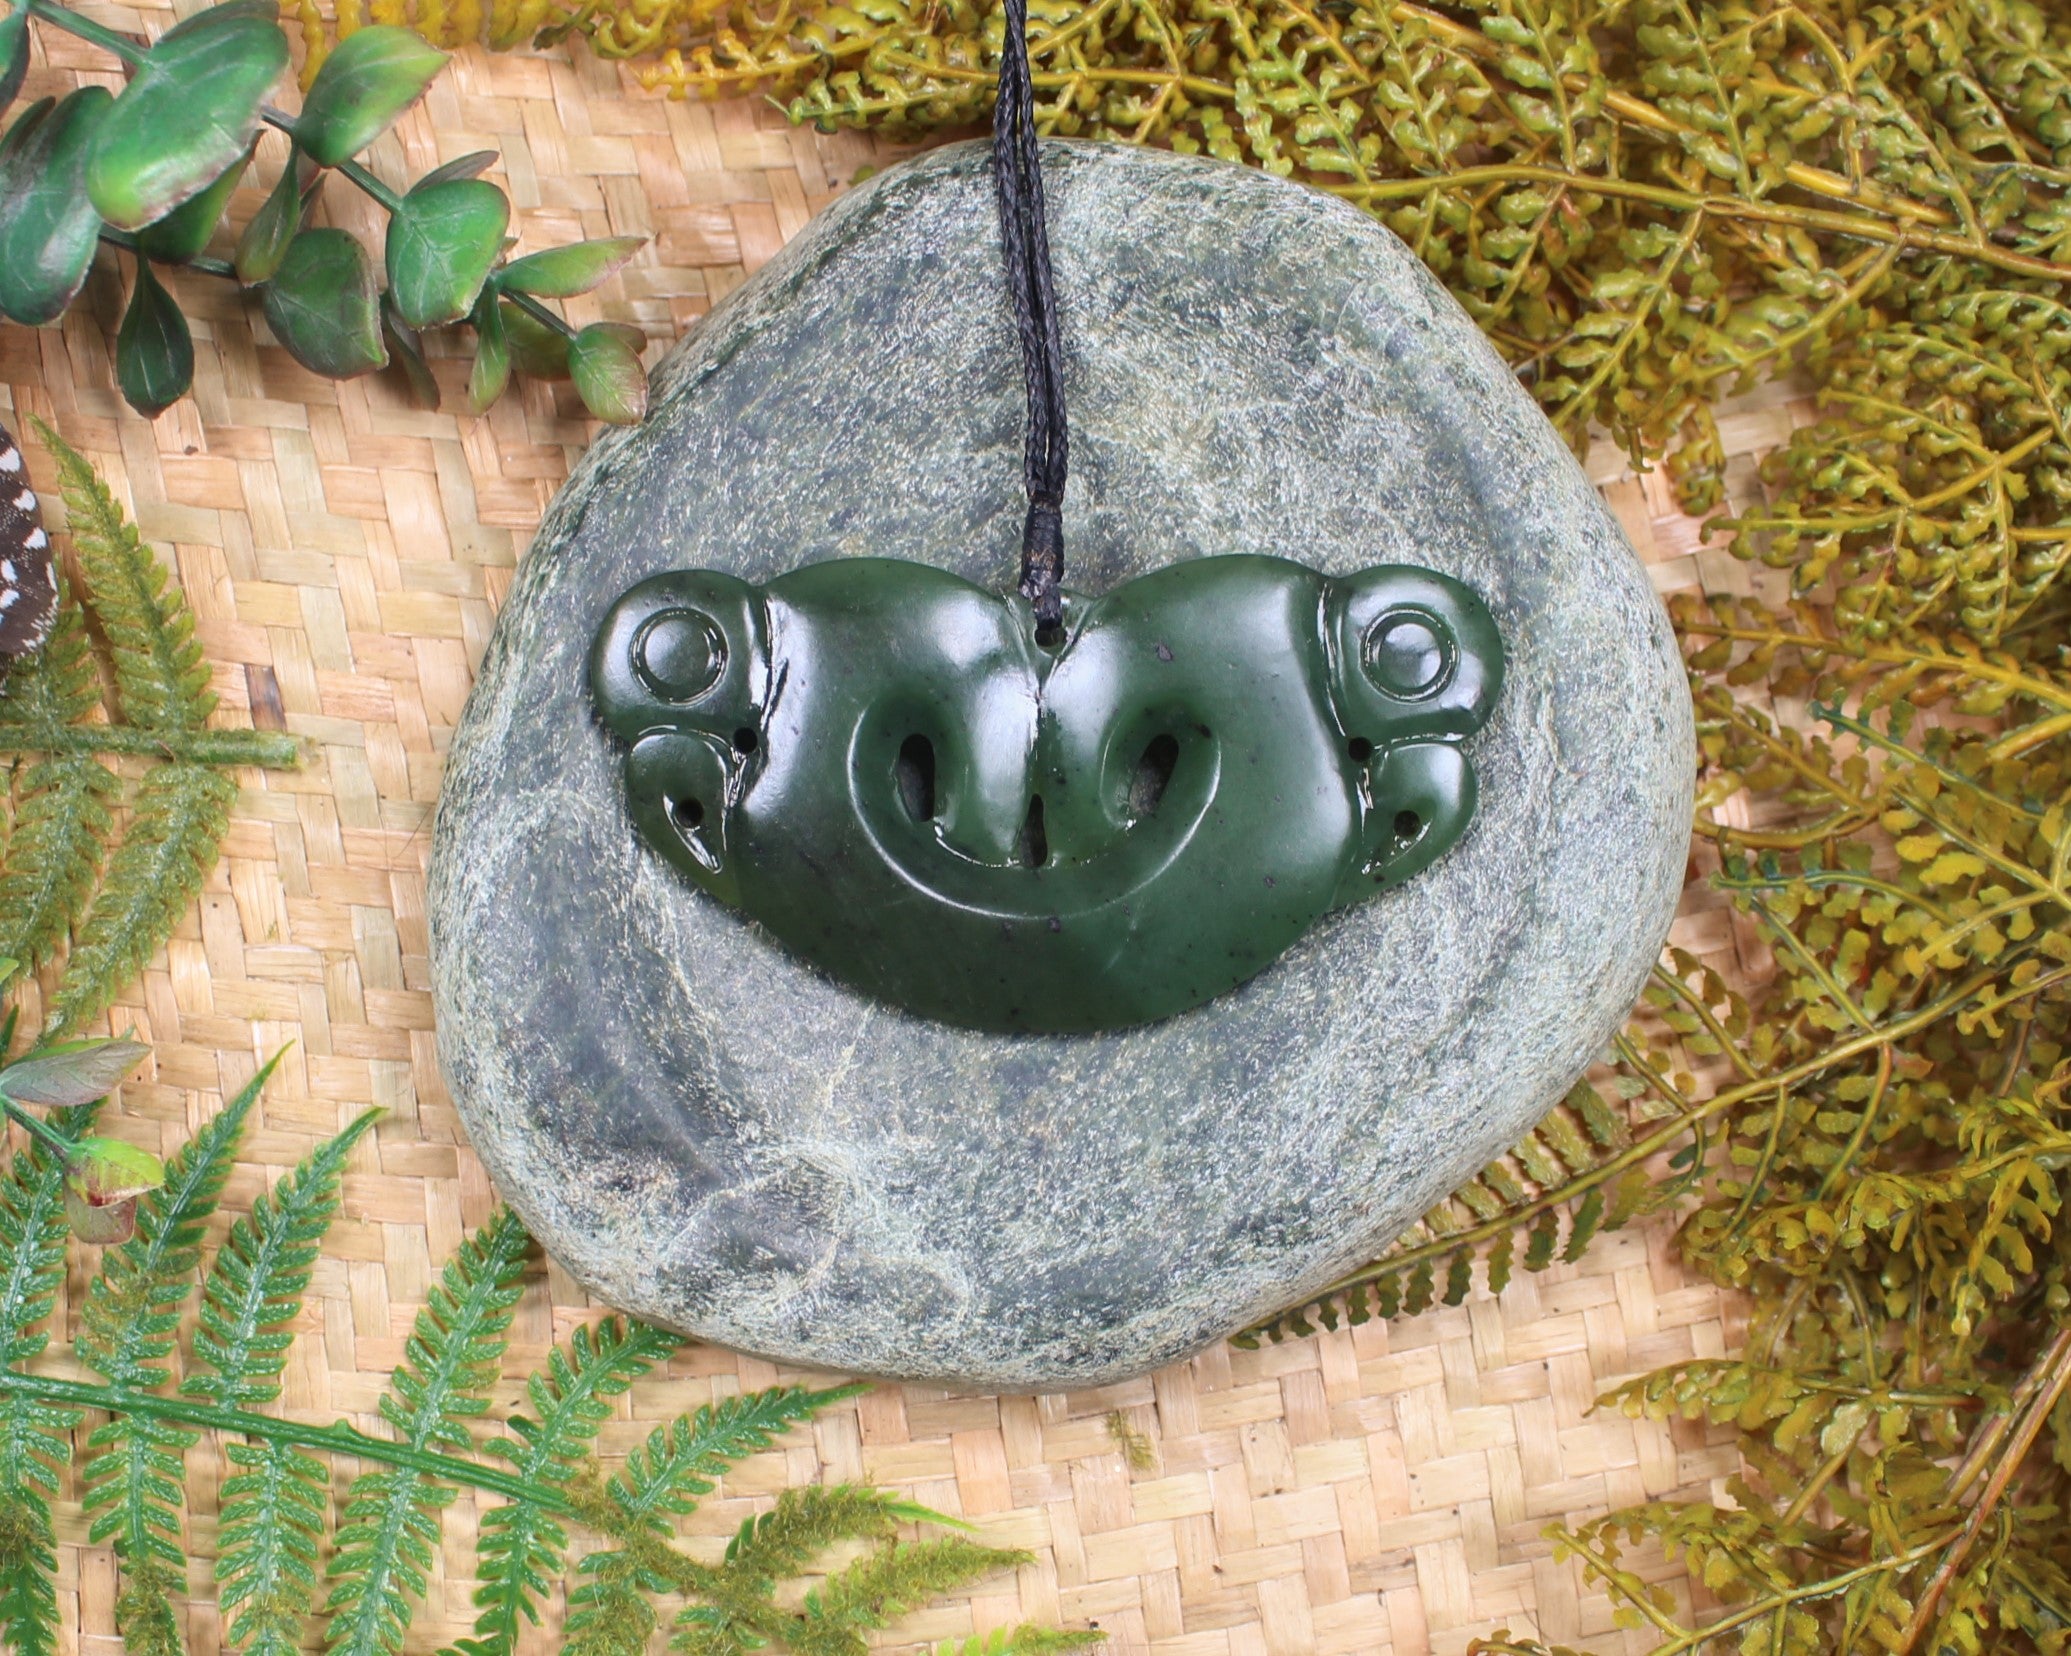 Pekapeka Pendant carved from Rimu Pounamu - NZ Greenstone